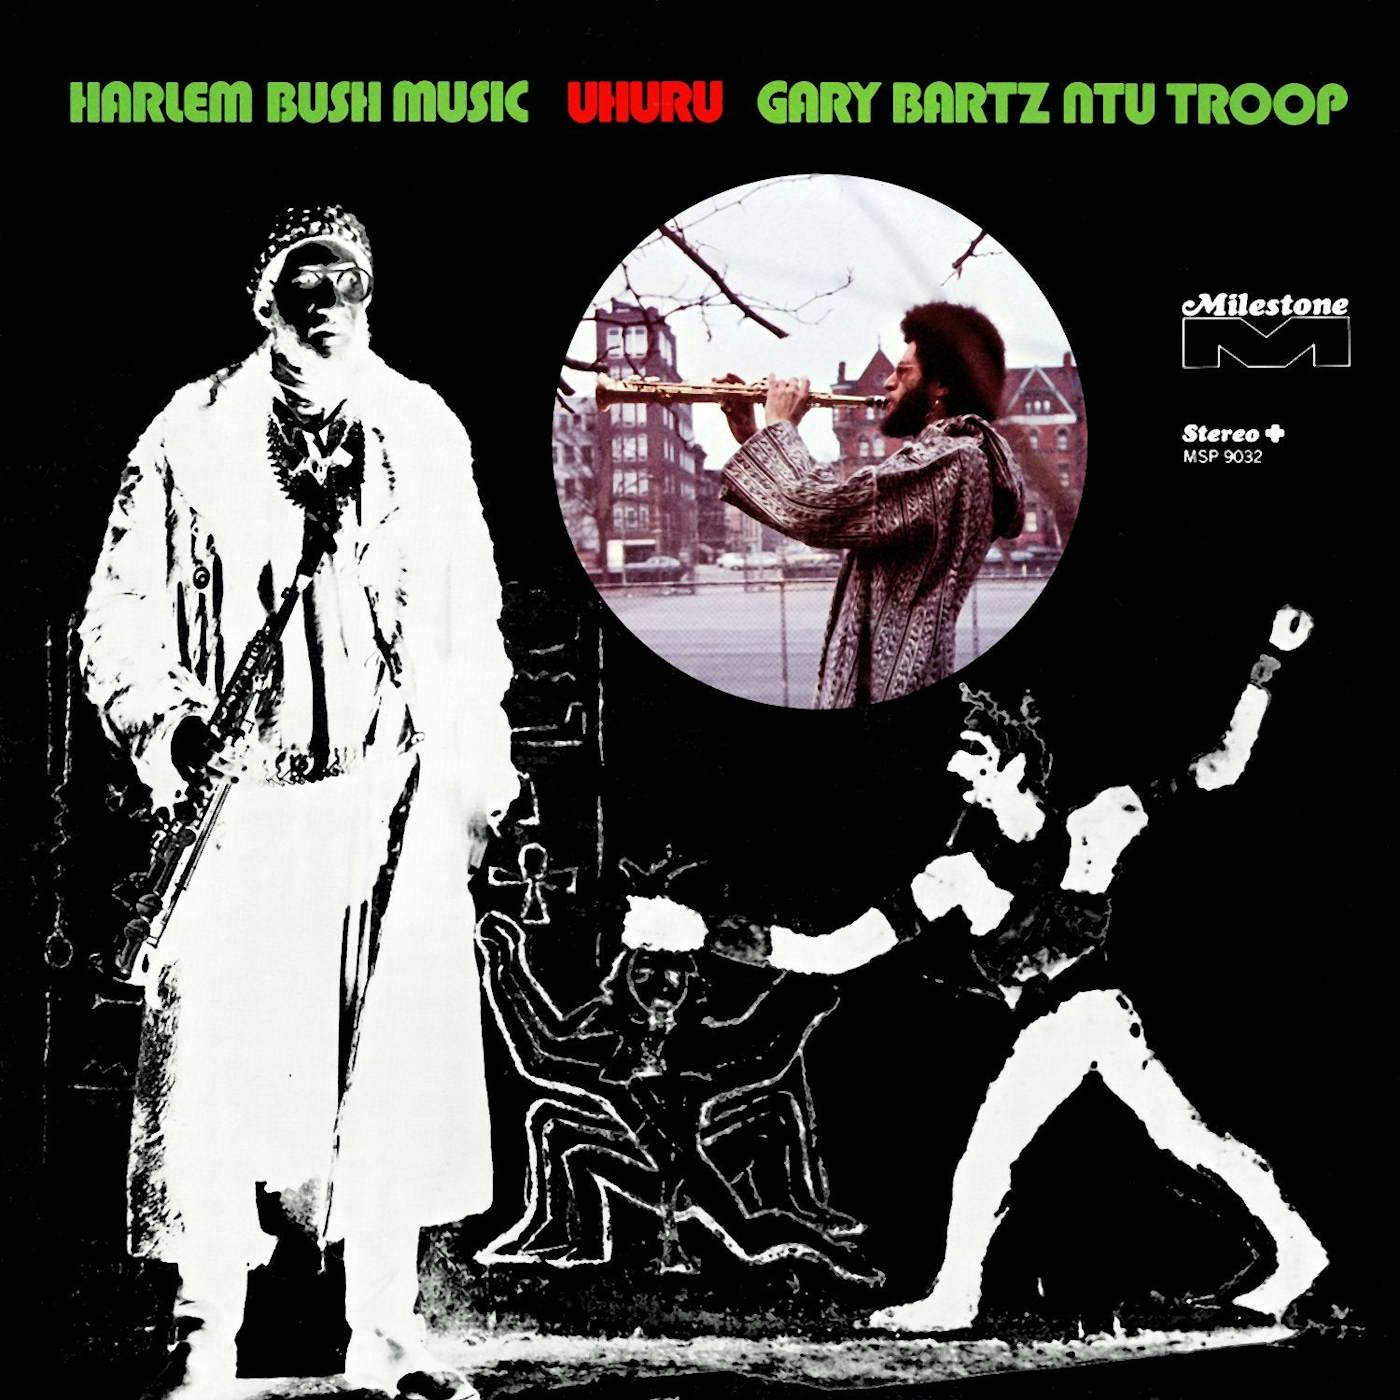 Gary Bartz Ntu Troop Harlem Bush Music - Uhuru (180g LP) (Vinyl)